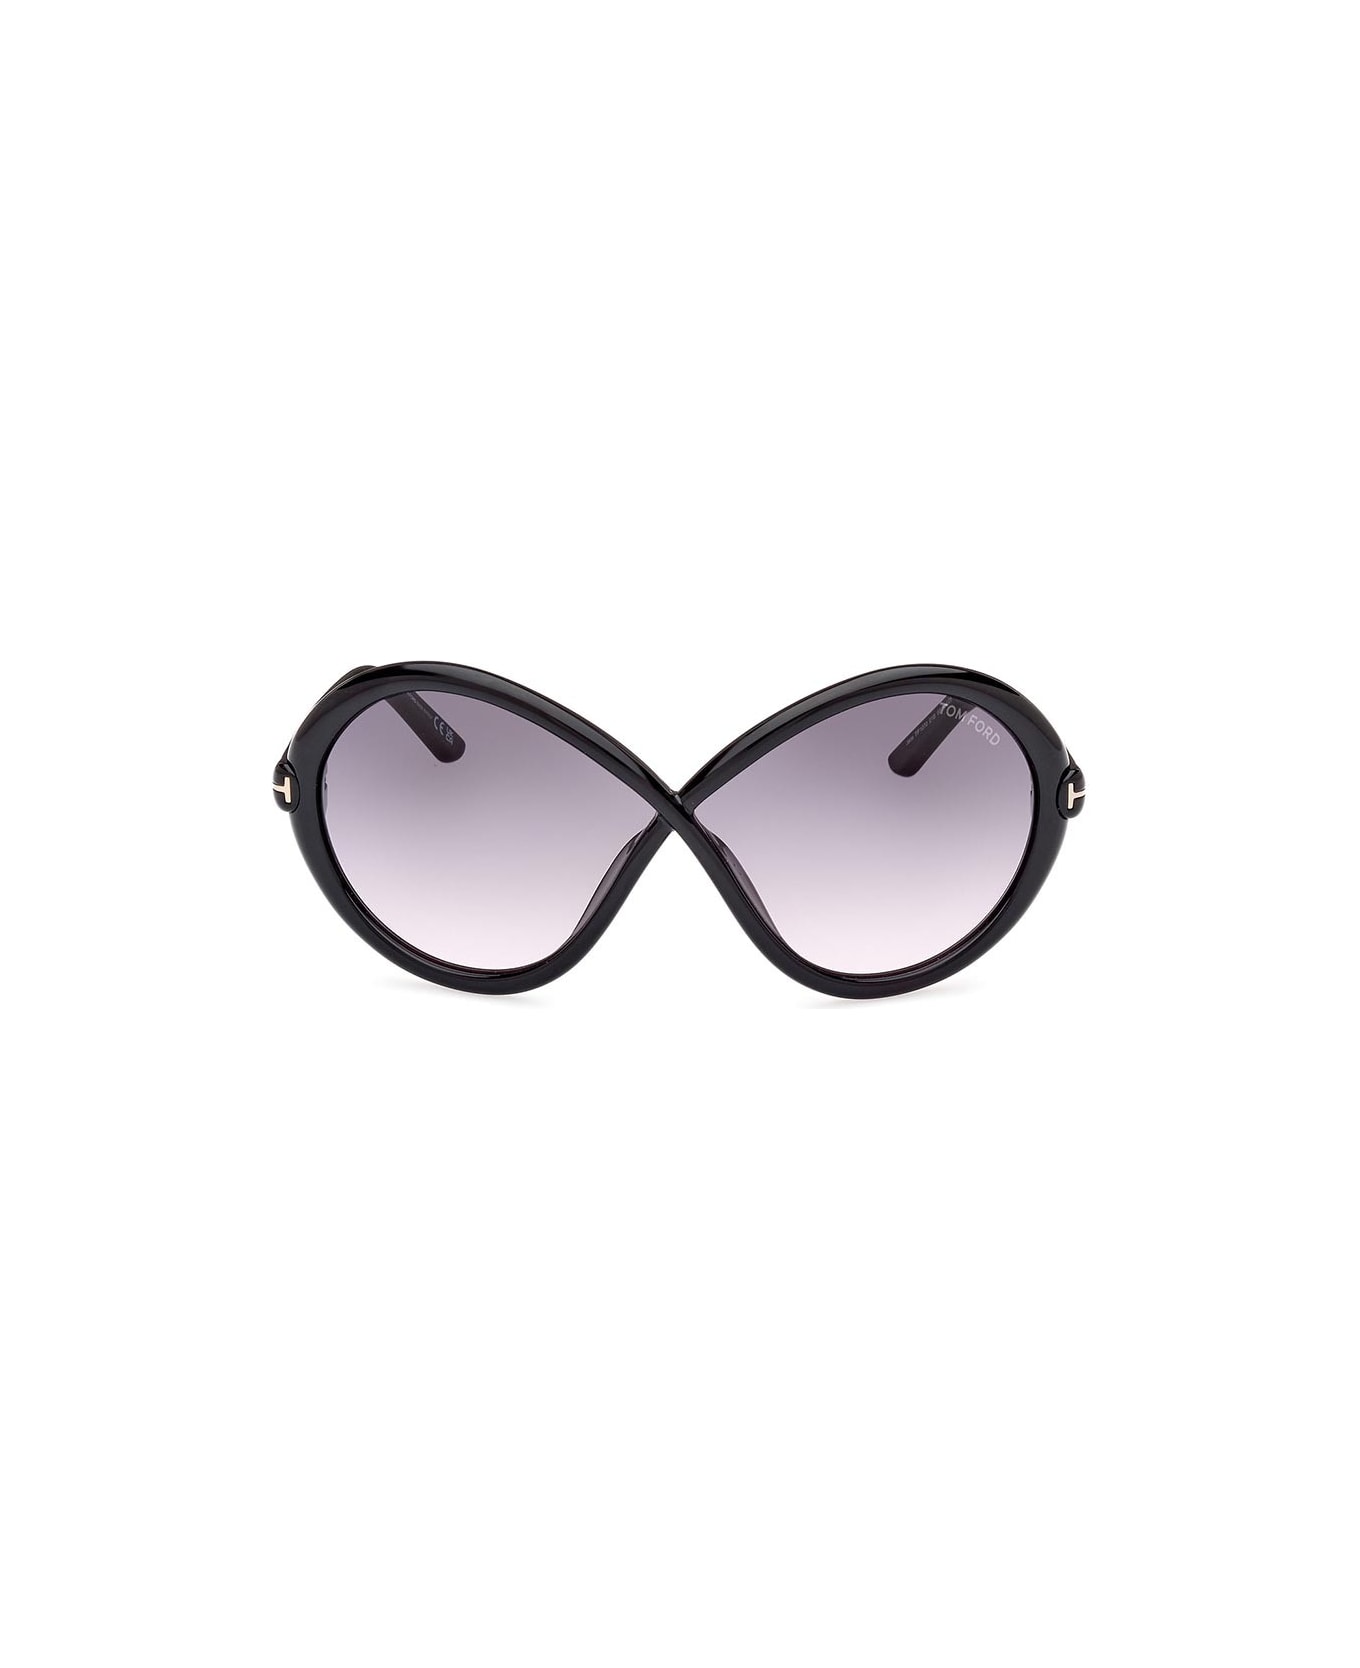 Tom Ford Eyewear Eyewear - Nero/Grigio